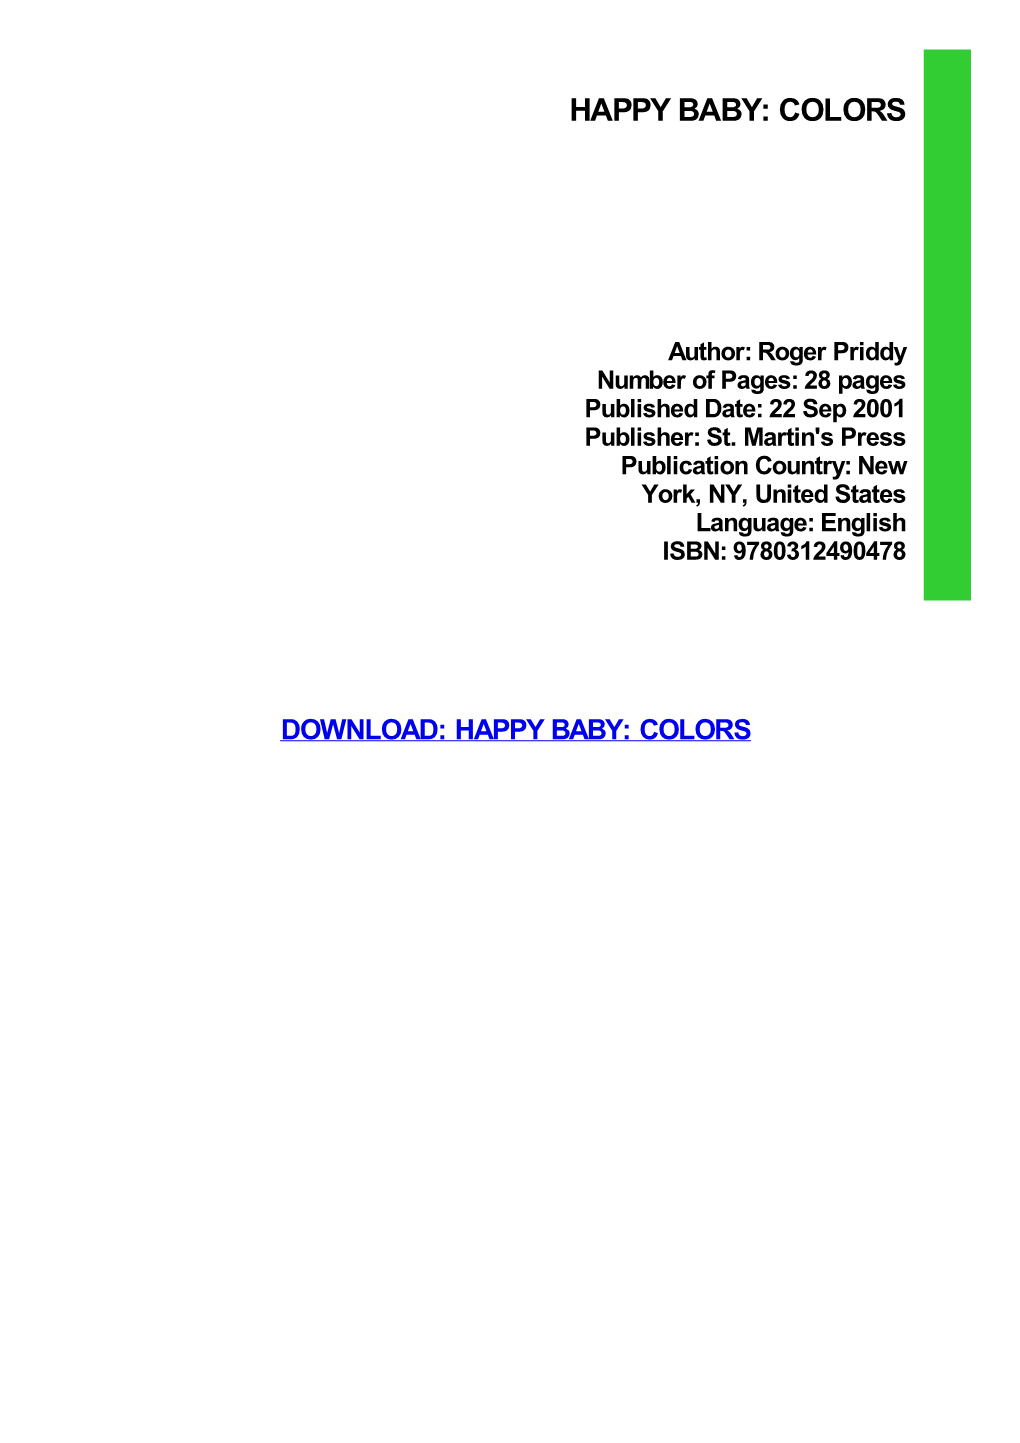 Happy Baby: Colors Ebook, Epub